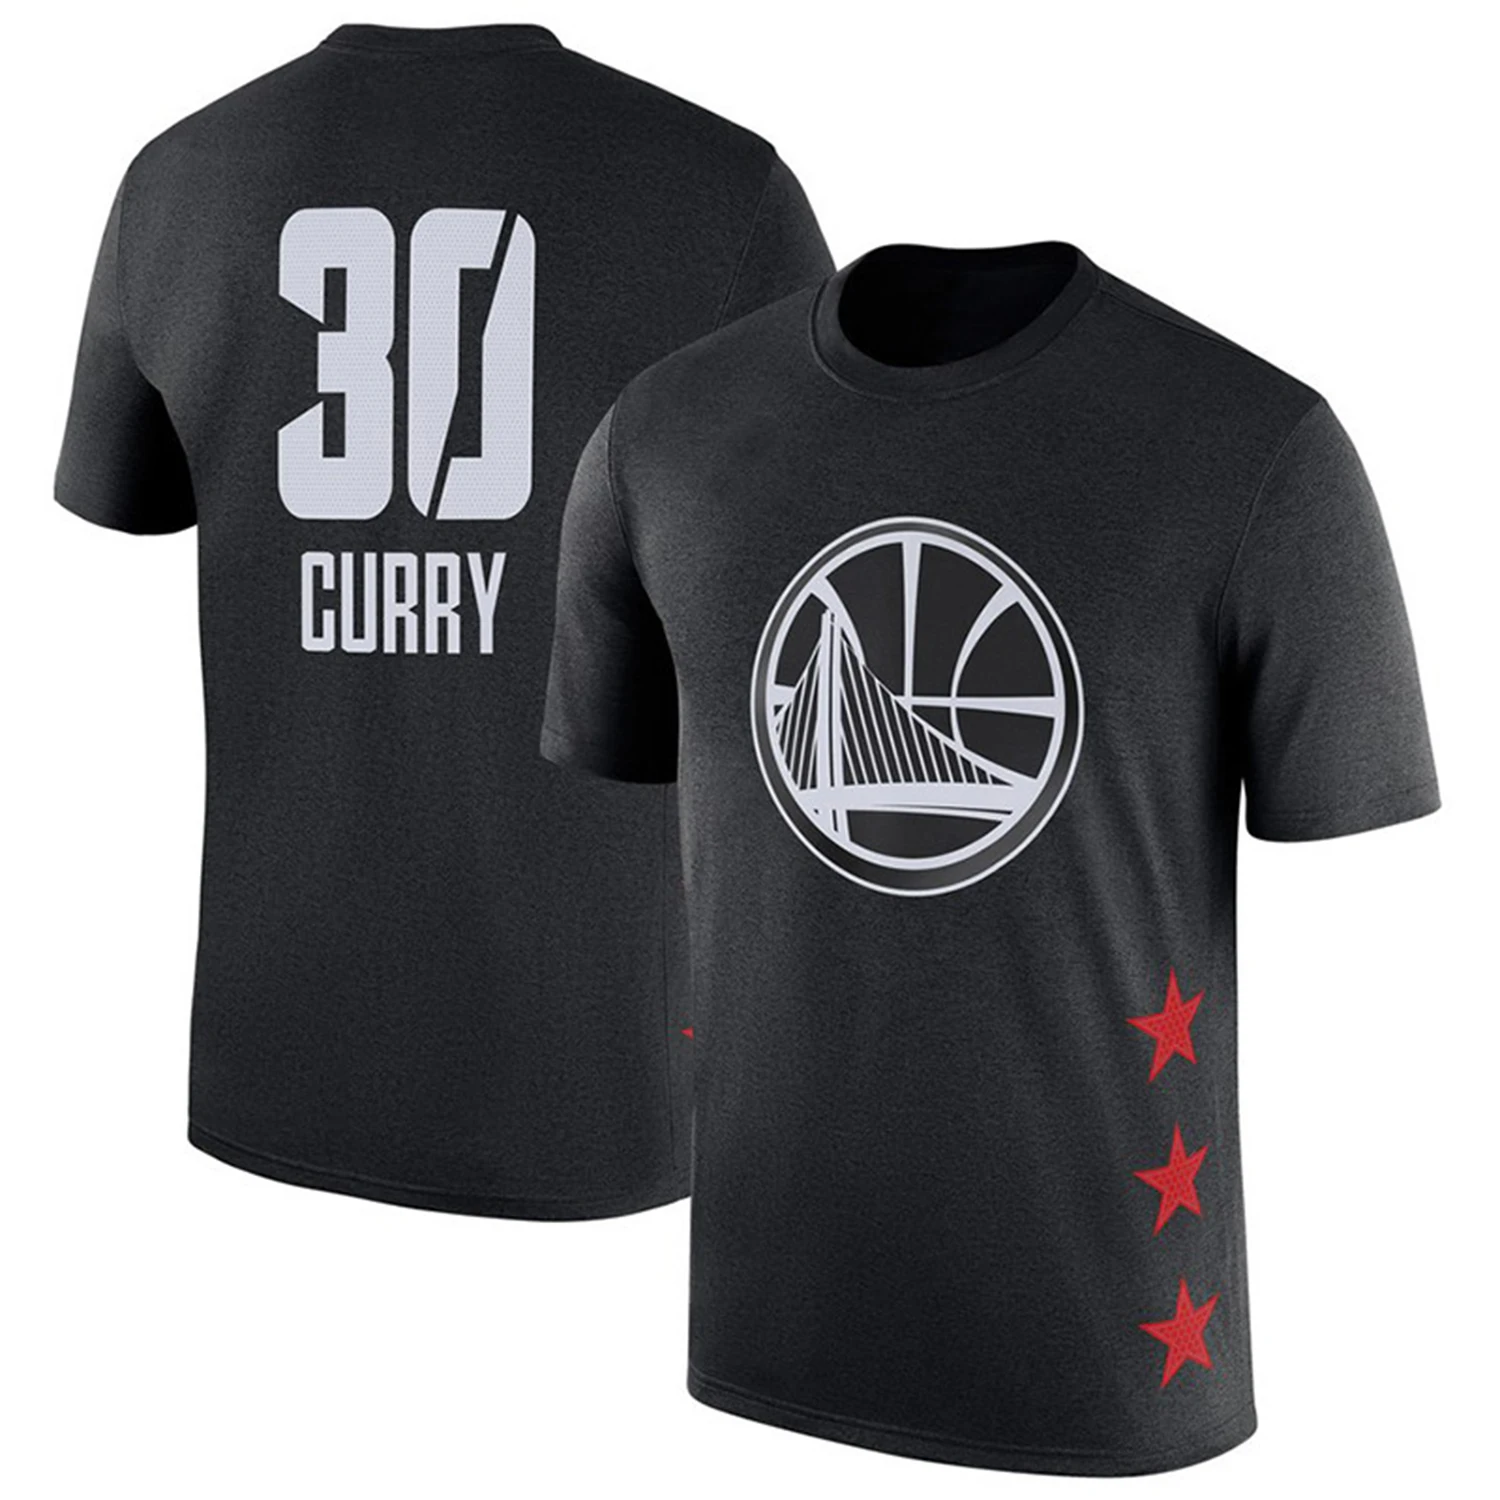 

Men's Basketball Jersey T-shirt, Golden State Warriors # 30 Stephen Curry Swingman Uniform, Christmas Gifts for Basketball Fans